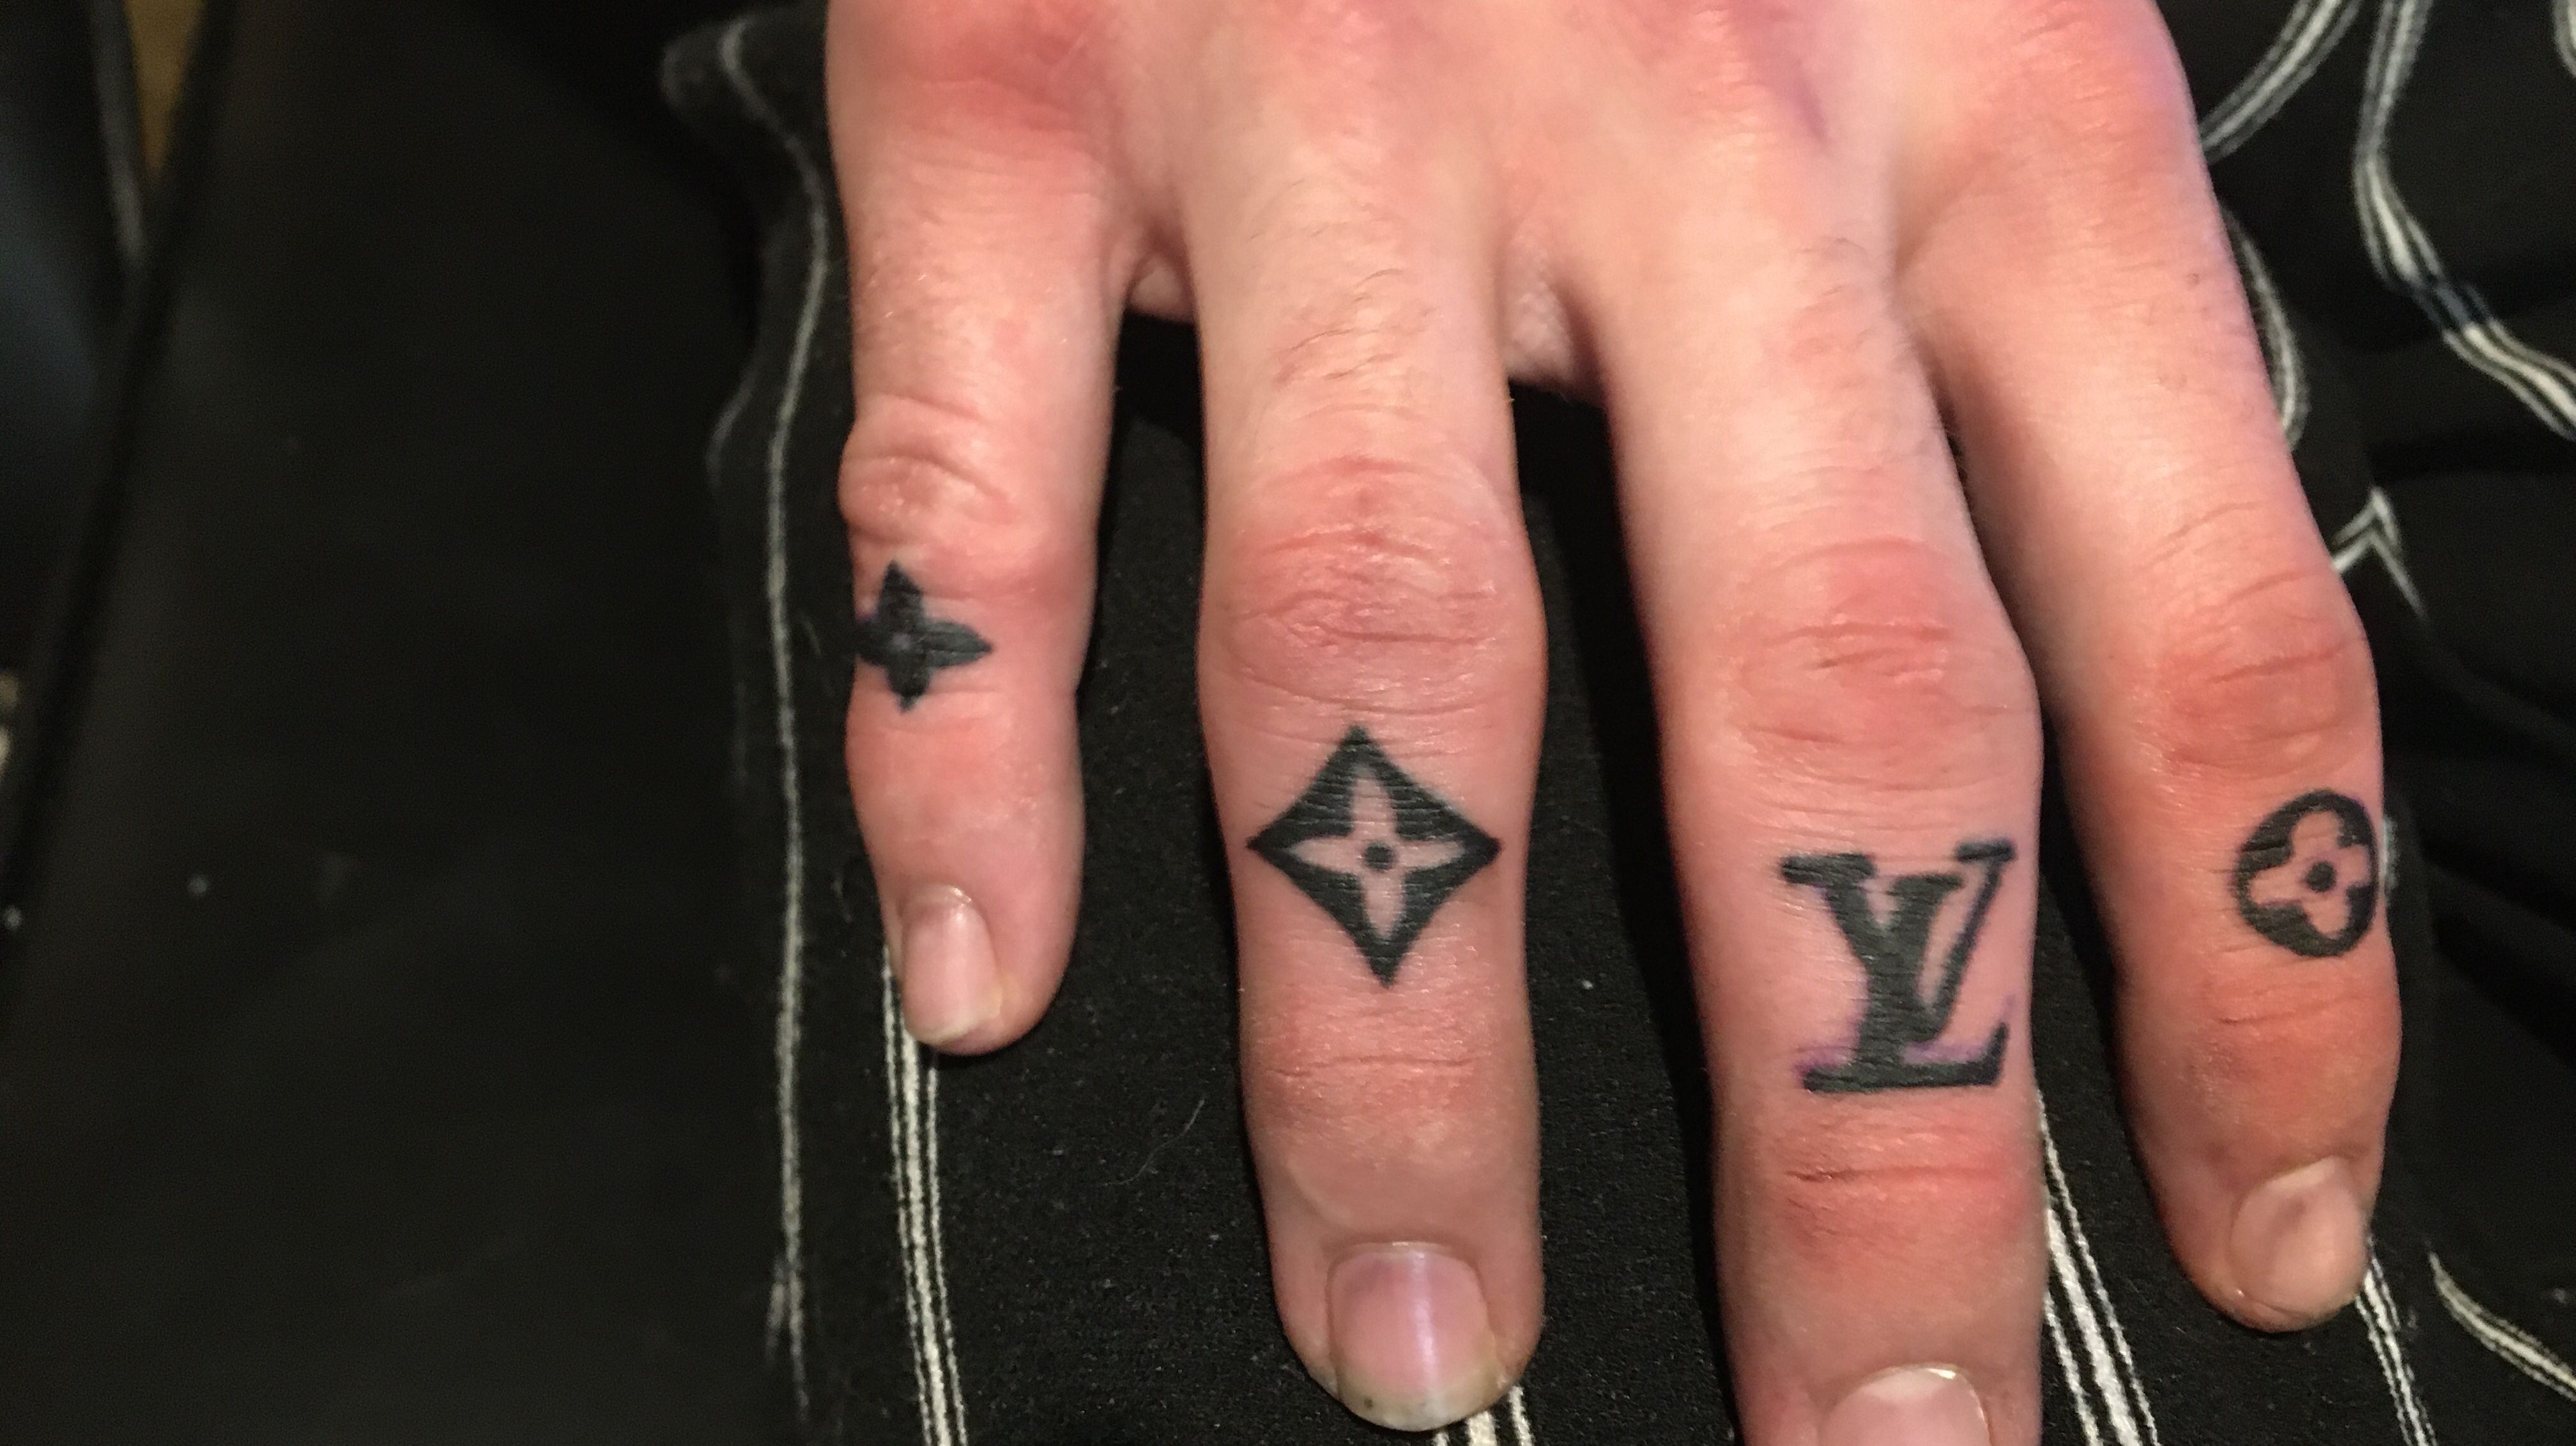 Finger tattoo Louis Vuitton high heel diamond tattoo stars tattoo